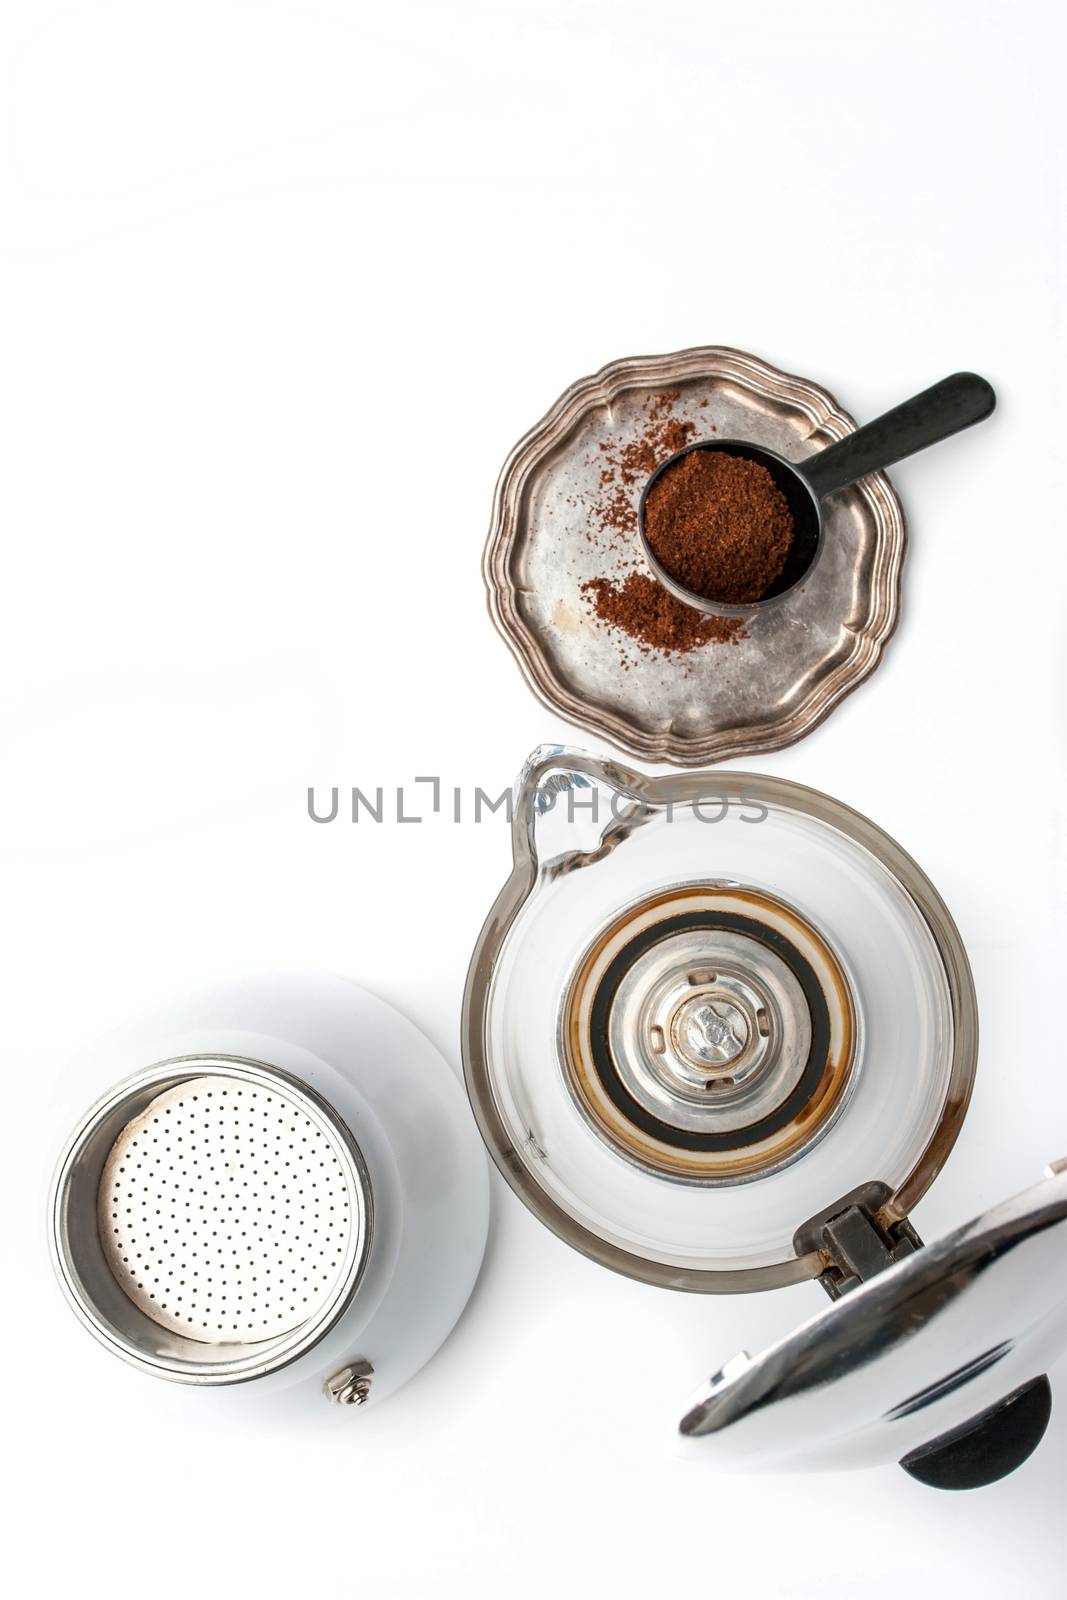 Coffee maker and vintage metal plate by Deniskarpenkov